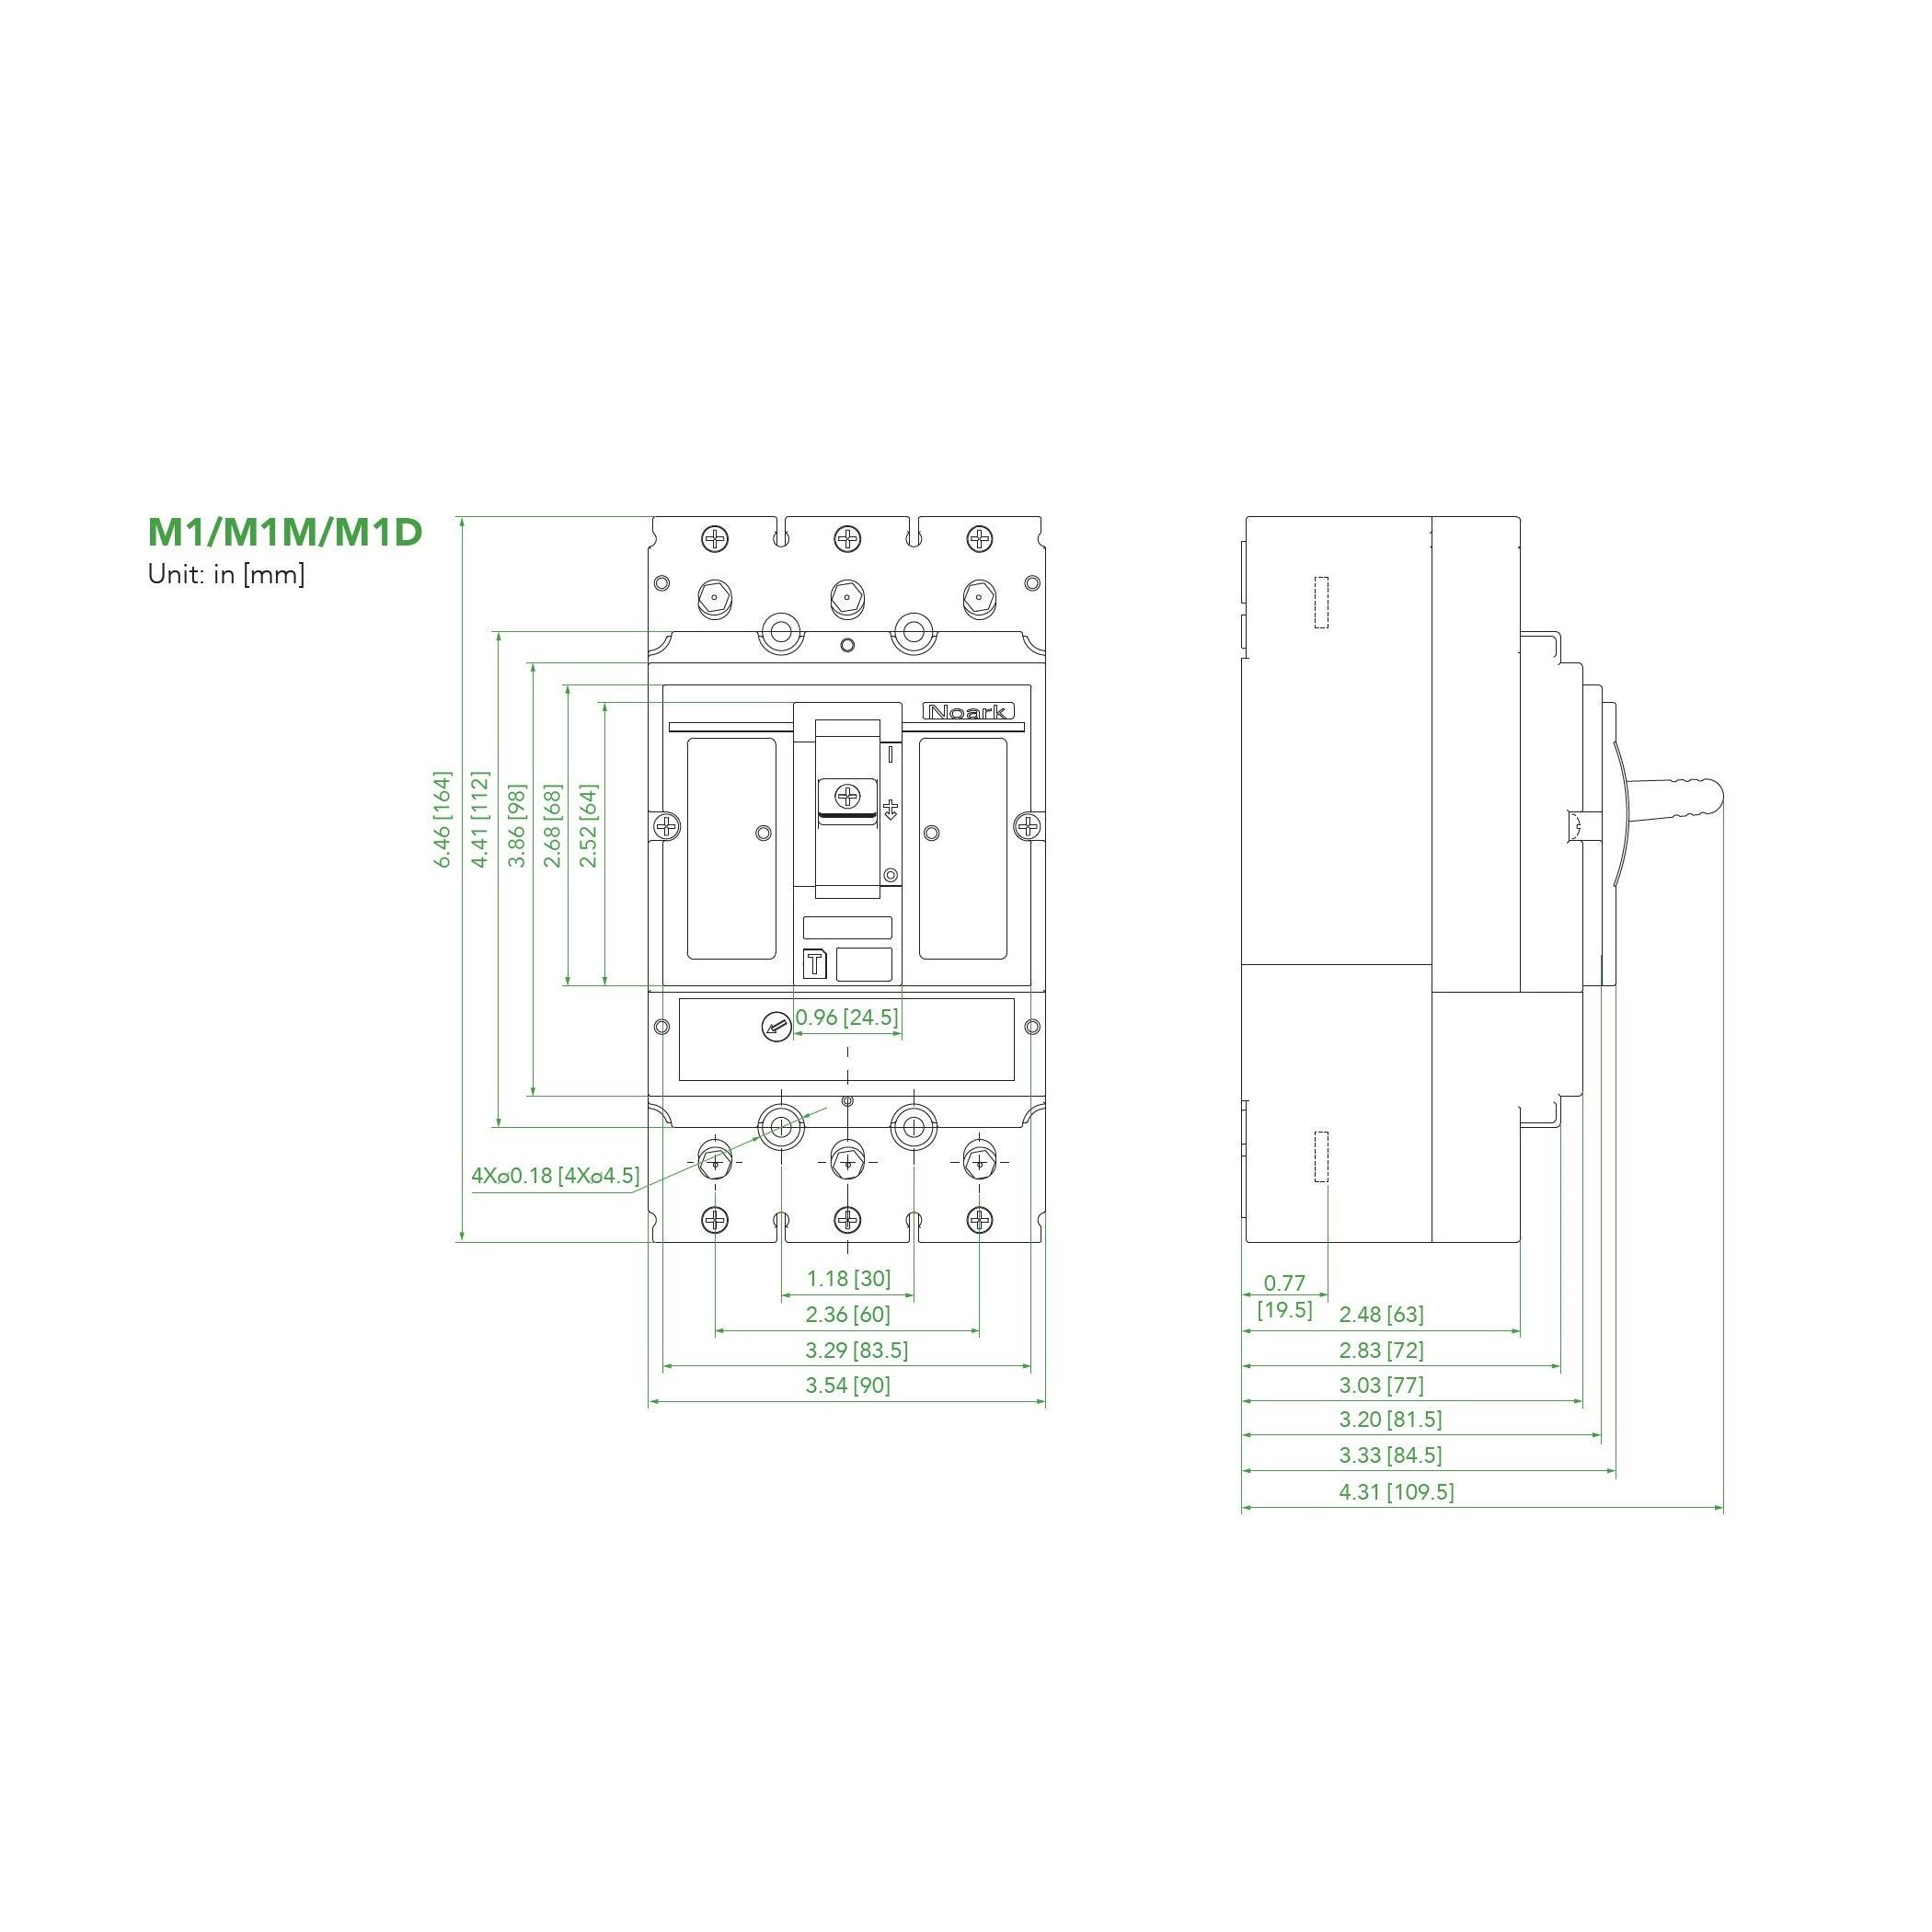 NOARK® Molded Case Circuit Breaker 20A, 3P IC Class H | M1H20T3L - Forces Inc